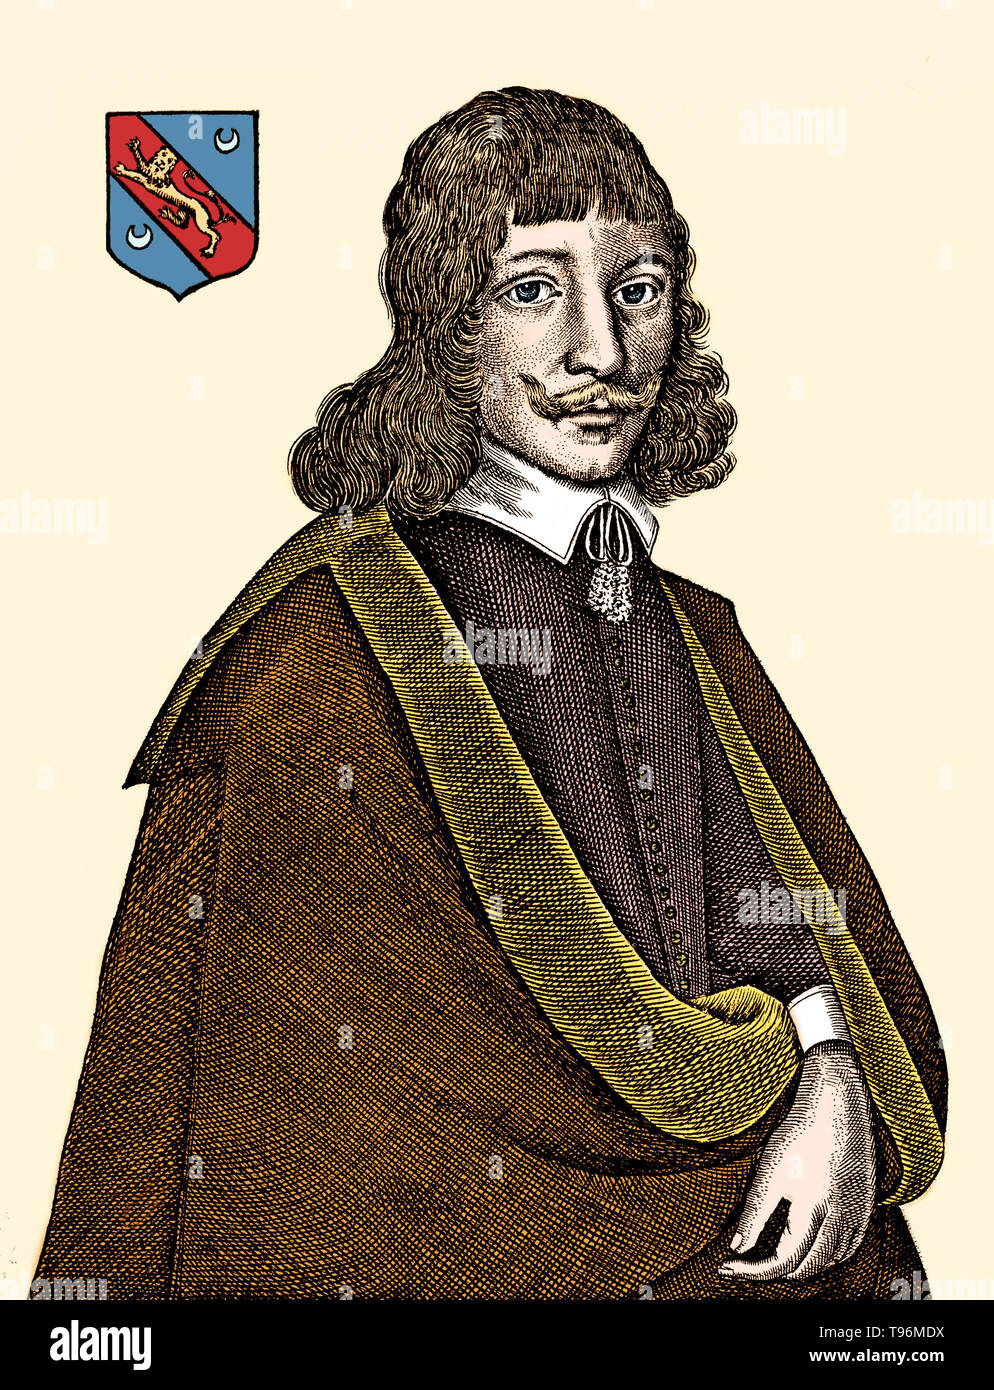 Nicholas Culpeper (18 Ottobre 1616 - 10 gennaio 1654) era un botanico inglese, erboristeria, medico e astrologo. I suoi libri pubblicati include l'inglese Physitian (1652), a base di erbe completa (1653), che contiene un ricco archivio di prodotti farmaceutici a base di erbe e di conoscenza, e sentenza astrologica di malattie da Decumbiture dei malati (1655), che è una delle più dettagliate documenti noti sulla pratica di astrologia medica. Foto Stock